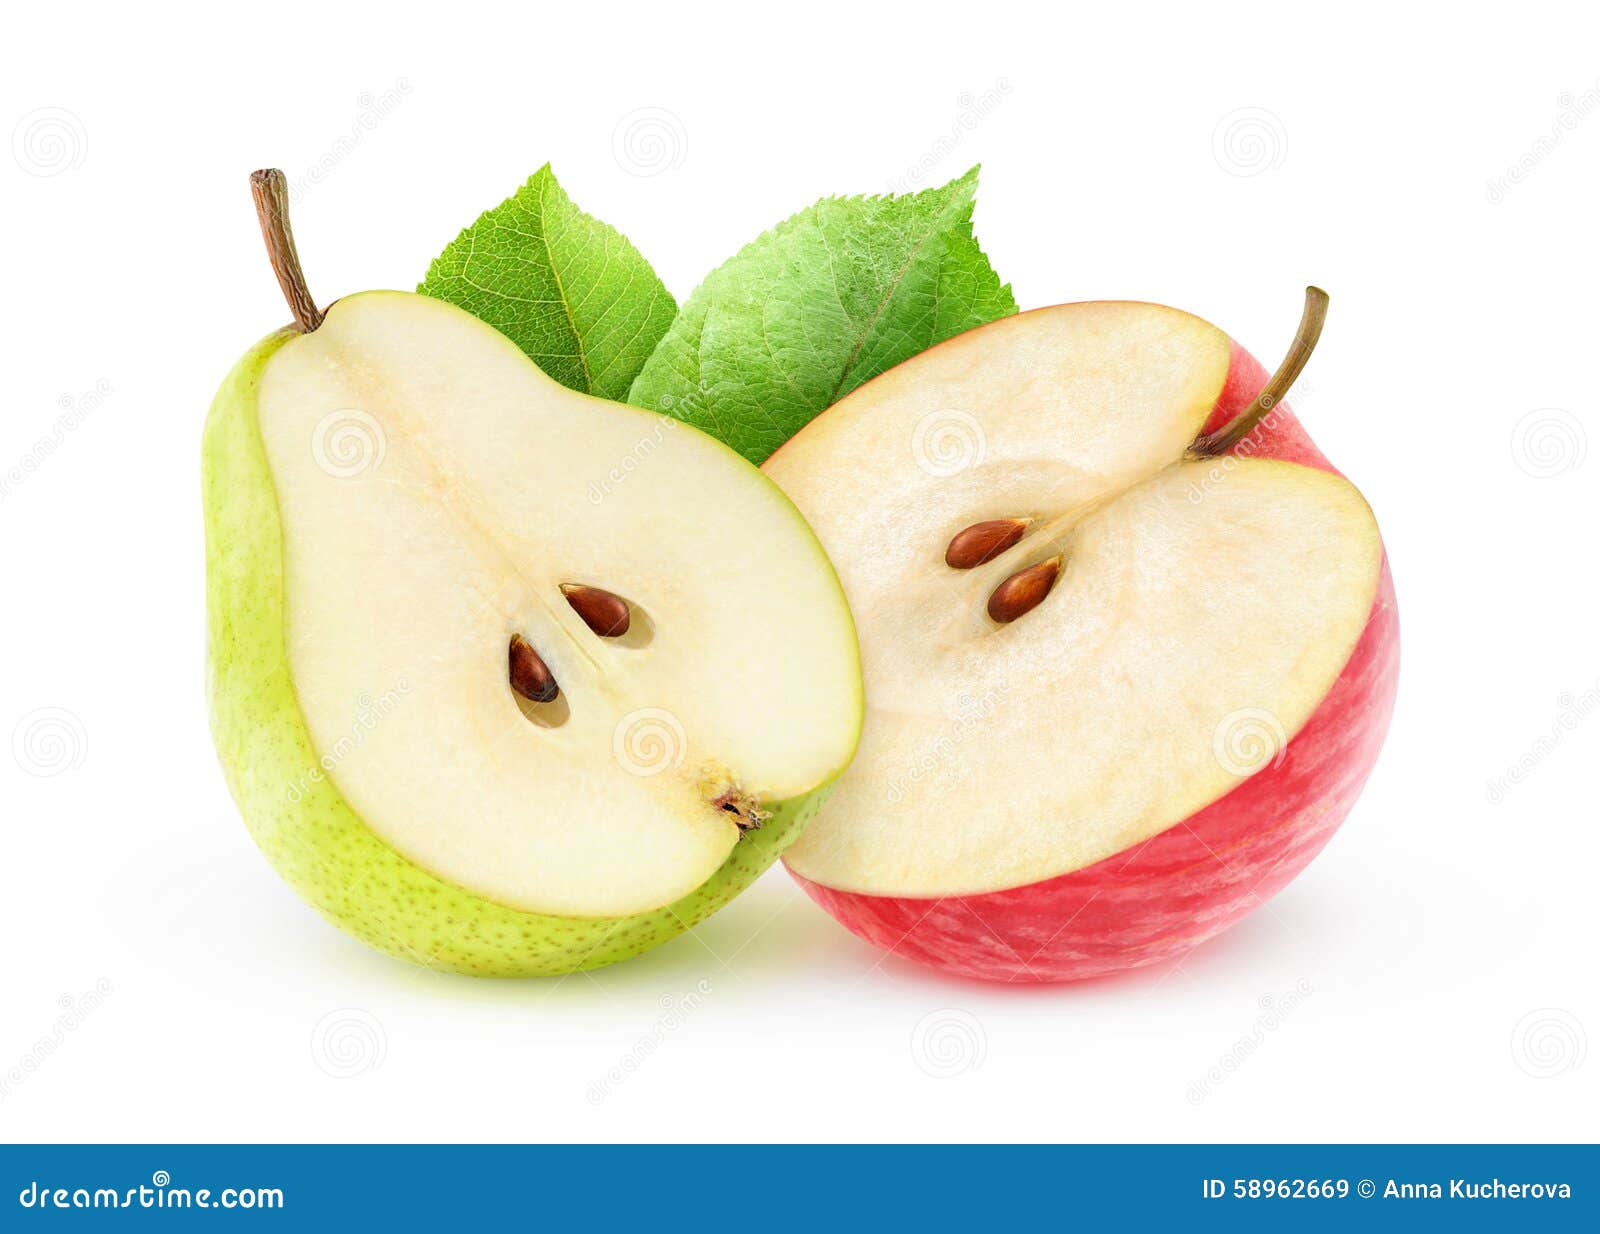 Яблоко и яблоко в разрезе